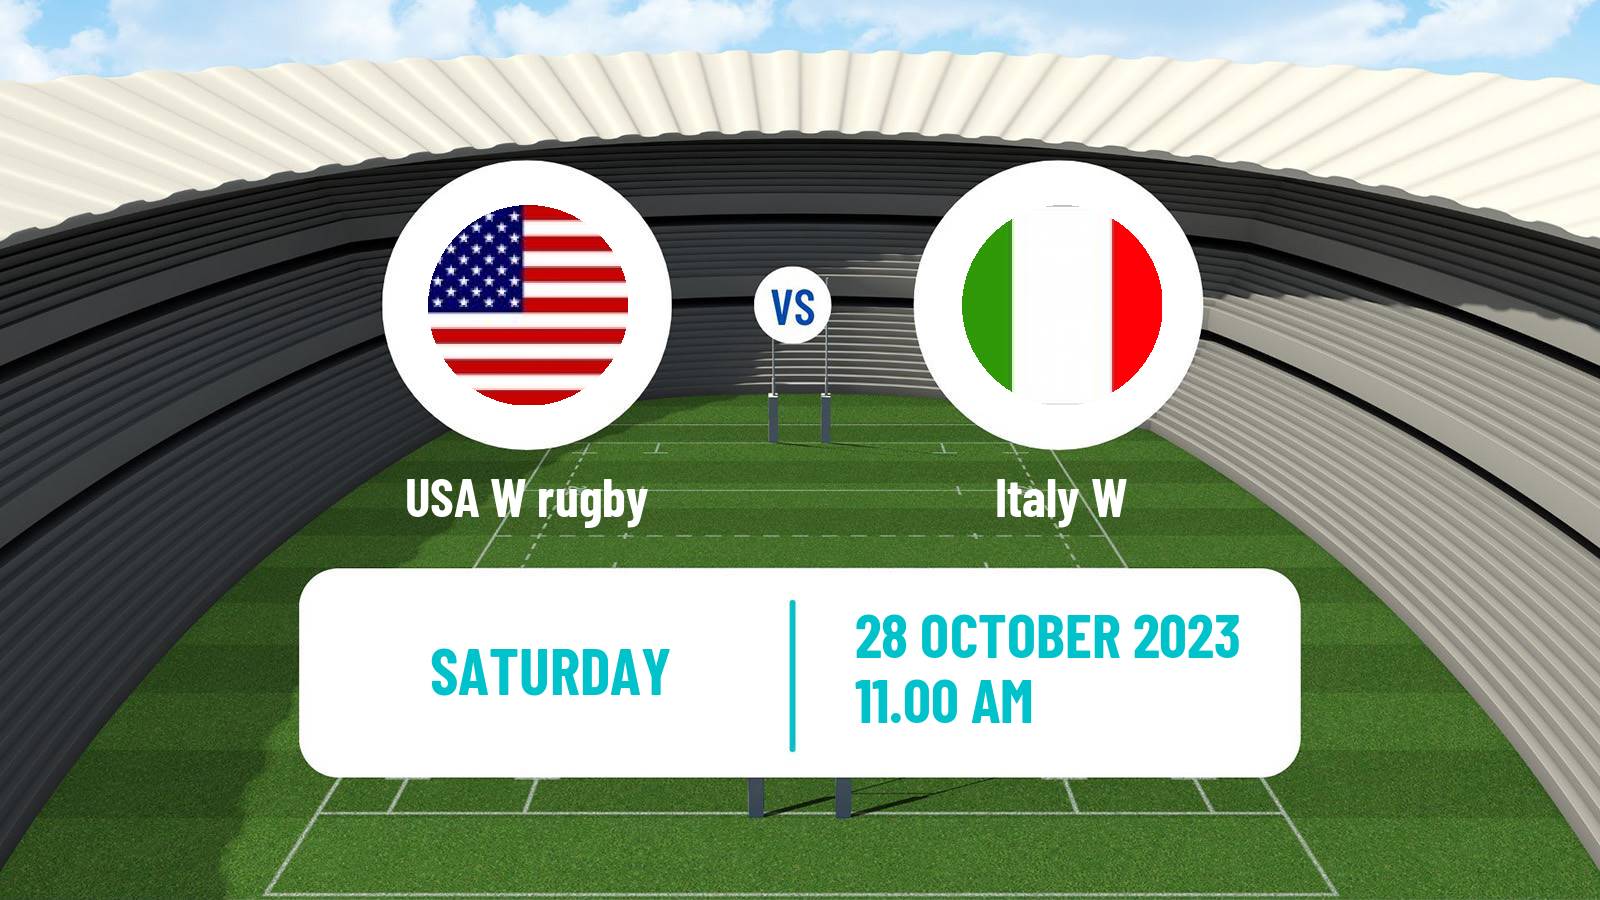 Rugby union WXV 2 Rugby Women USA W - Italy W